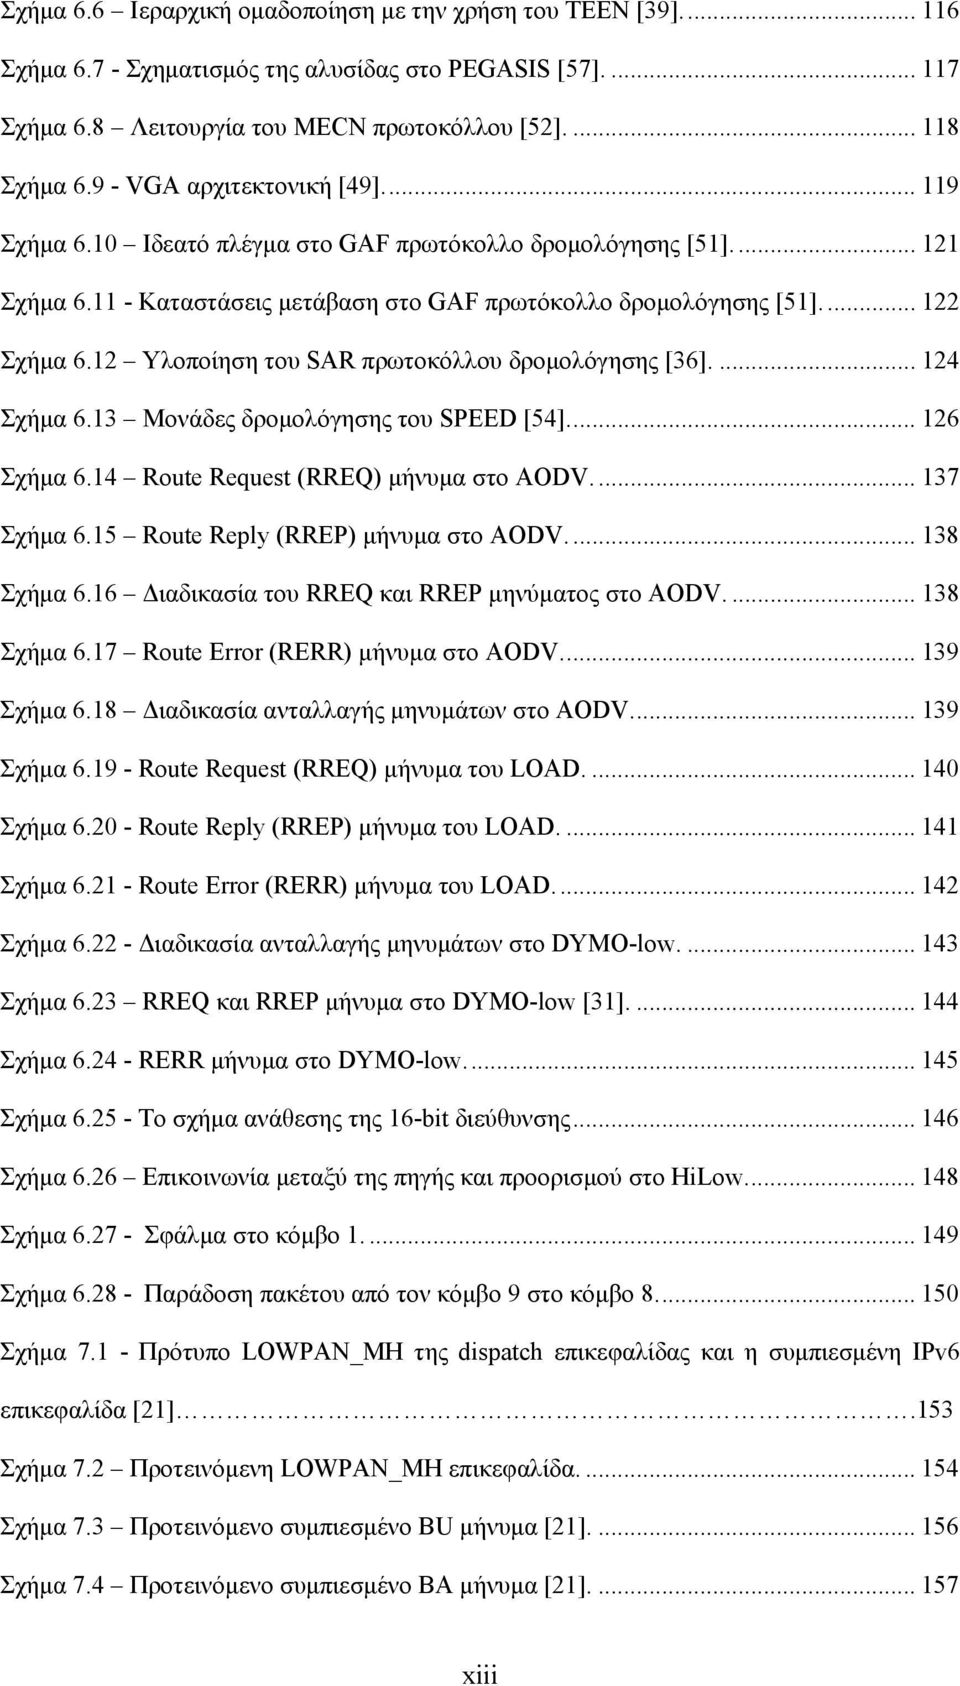 12 Υλοποίηση του SAR πρωτοκόλλου δρομολόγησης [36].... 124 Σχήμα 6.13 Μονάδες δρομολόγησης του SPEED [54]... 126 Σχήμα 6.14 Route Request (RREQ) μήνυμα στο AODV.... 137 Σχήμα 6.